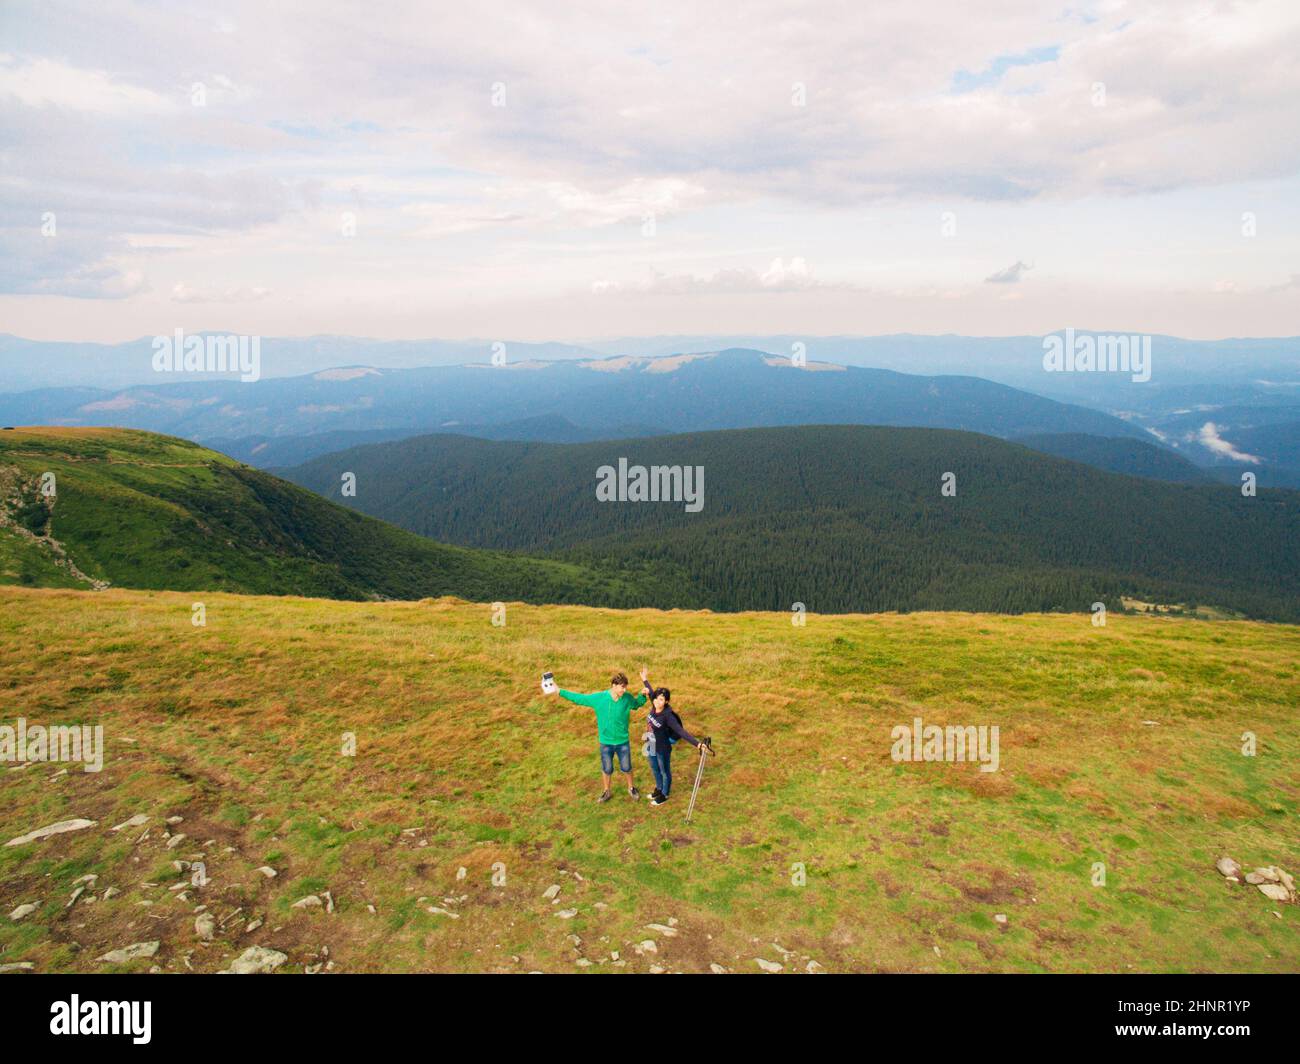 Luftaufnahme des Great Green Ridge. Guy und Girl stehen auf einem großen Hügel vor dem Hintergrund einer riesigen Berglandschaft Stockfoto